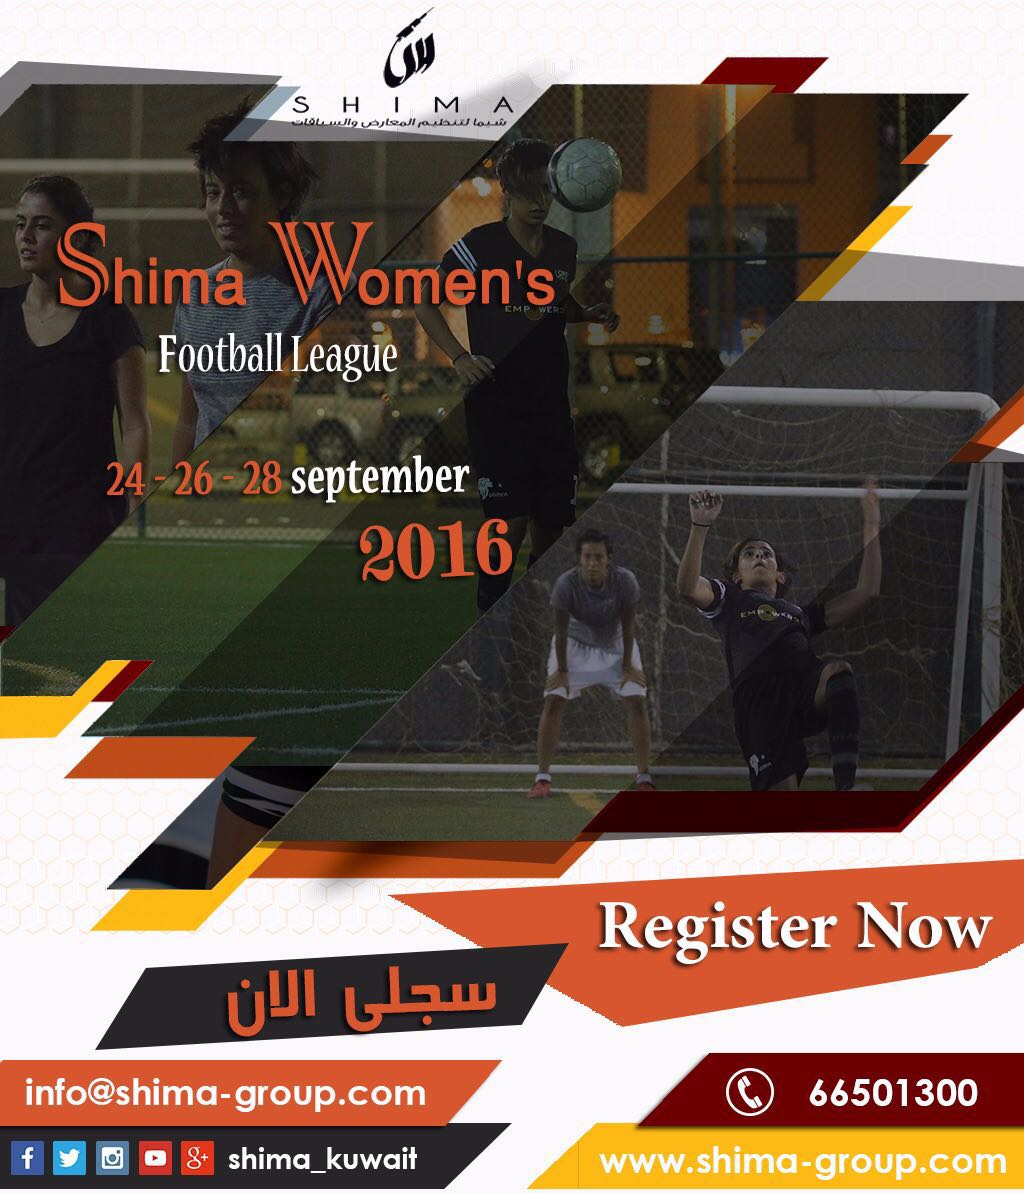 كرة القدم النسائية | شيما لتنظيم الفعاليات الرياضية بالكويت WhatsApp%2BImage%2B2016-08-30%2Bat%2B10.50.26%2BAM